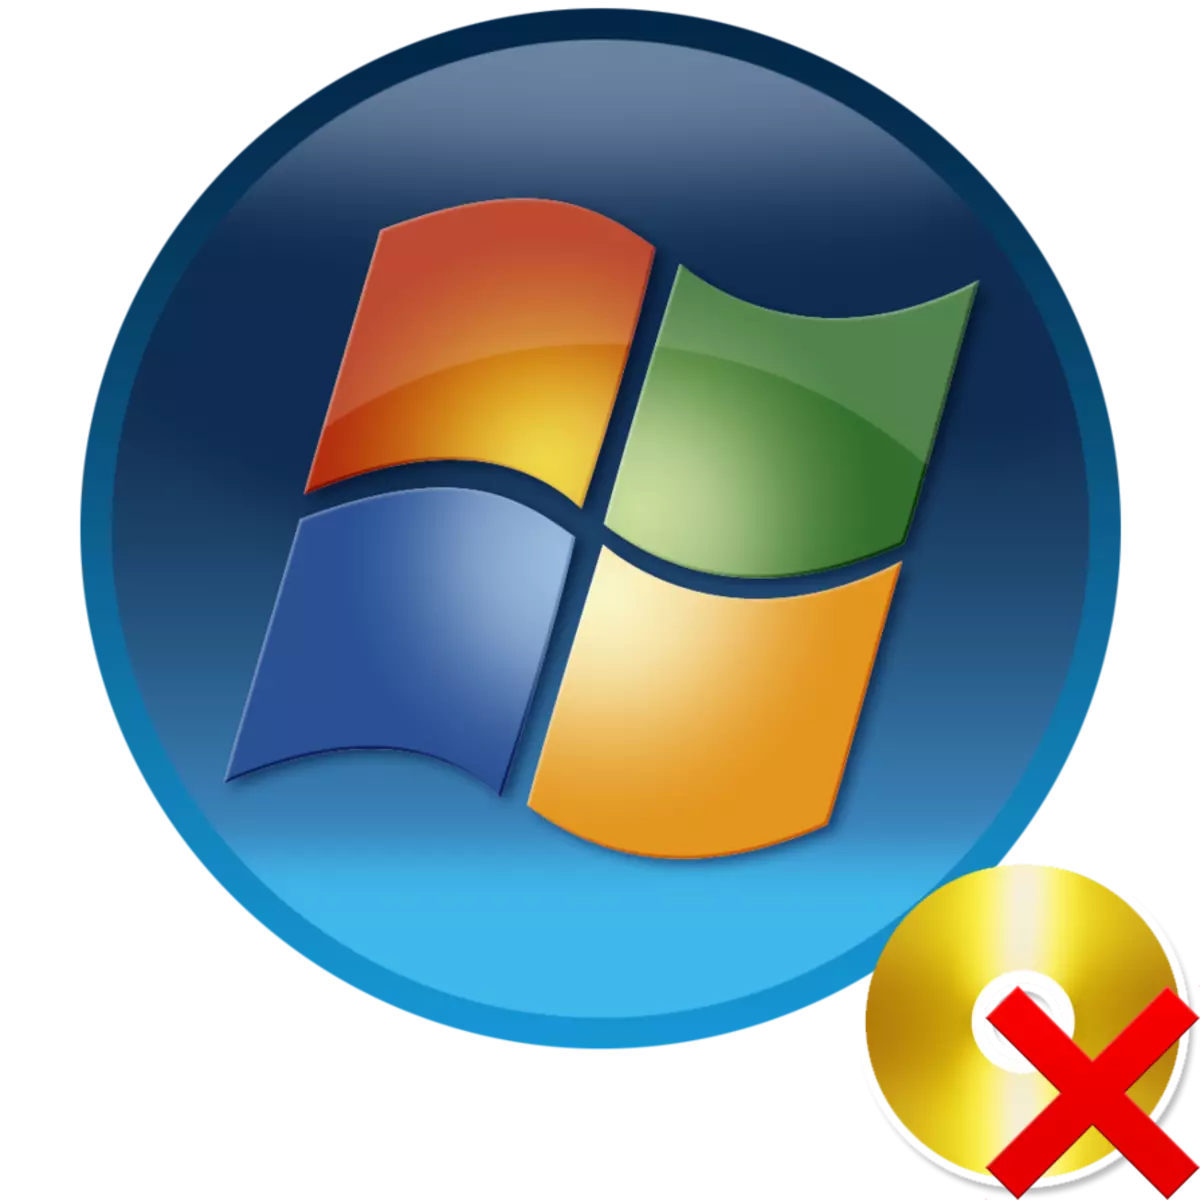 Ho hlakola disk e fumanehang khomphuteng ka Windows 7